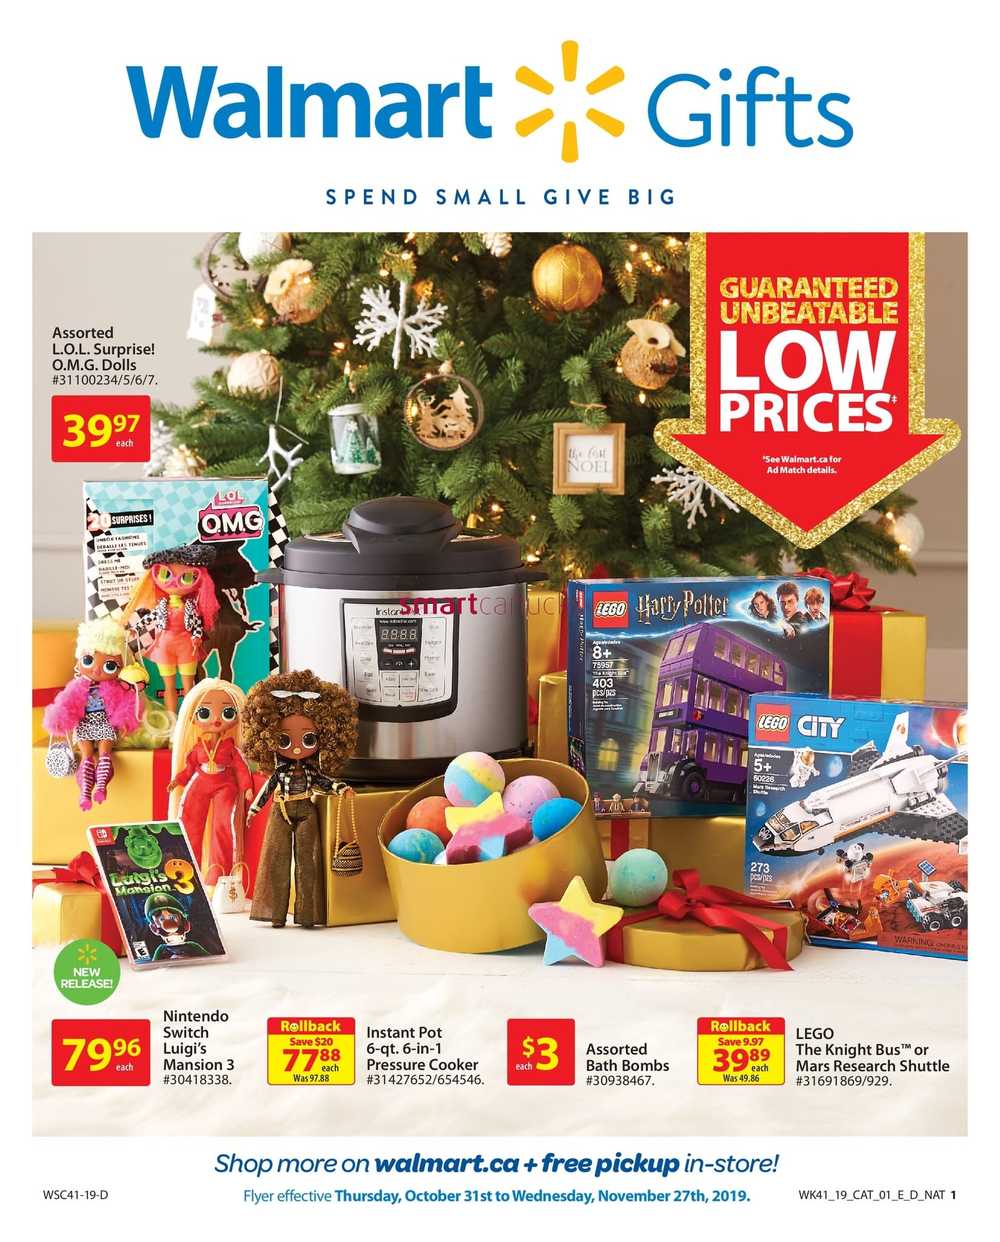 Walmart Gifts Catalogue October 31 to November 27